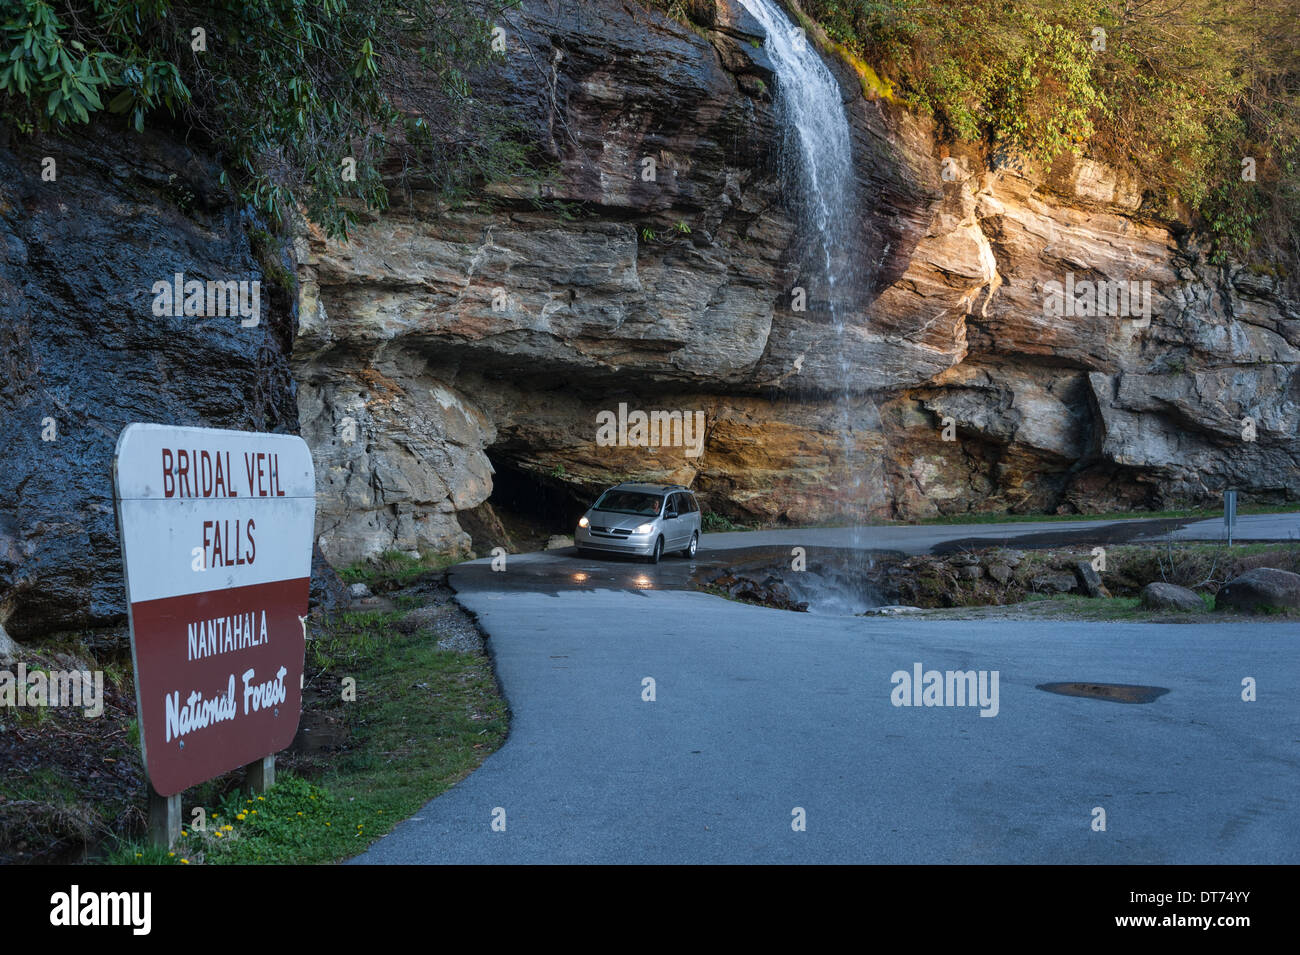 Bridal Veil Falls près de Highlands, NC, offre aux conducteurs la possibilité de conduire derrière une cascade de montagne le long de la route 64. (ÉTATS-UNIS) Banque D'Images